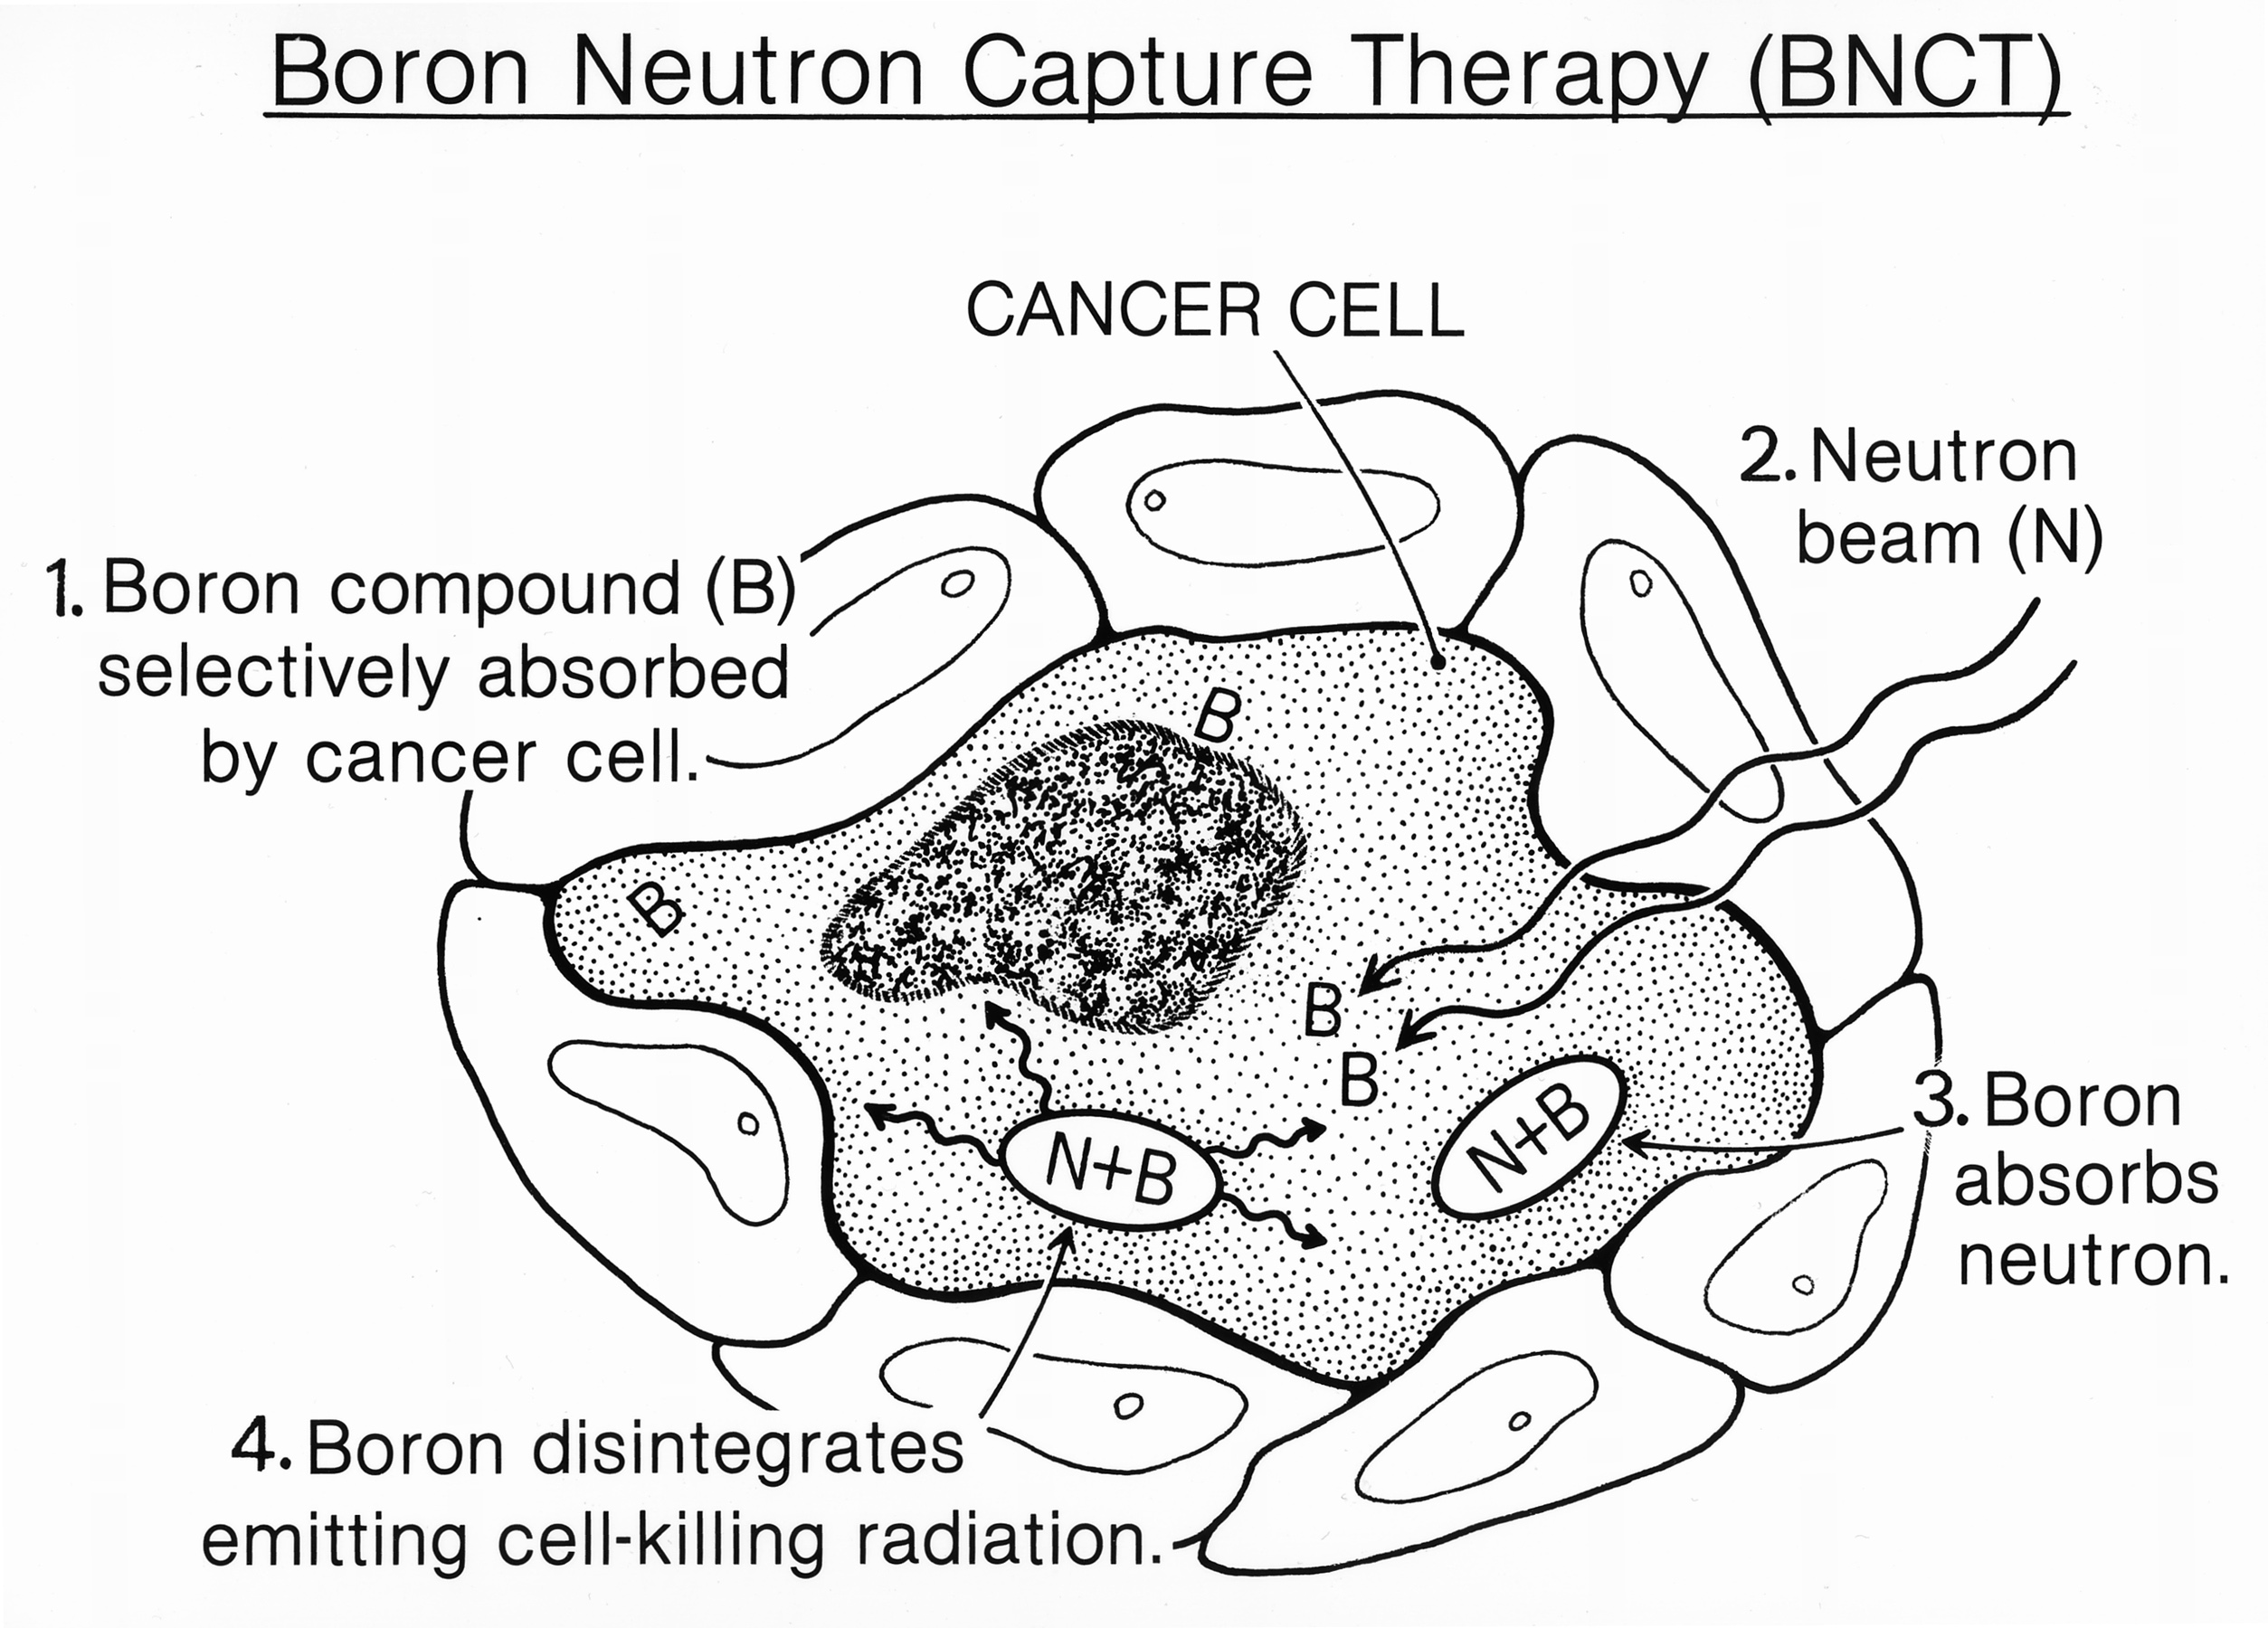 La&nbsp;Boron Neutron Capture Therapy&nbsp;(BNCT) est une&nbsp;méthode d’irradiation en plusieurs étapes : (1) le bore 10 est absorbé par la cellule cancéreuse, (2) le neutron entre à son tour dans la cellule, (3) le bore interagit avec le neutron pour donner du bore 11, (4) le bore 11 se désintègre et émet des radiations qui tuent la cellule.&nbsp;©&nbsp;National Cancer Institut, Wikimedia Commons, cc by sa 3.0